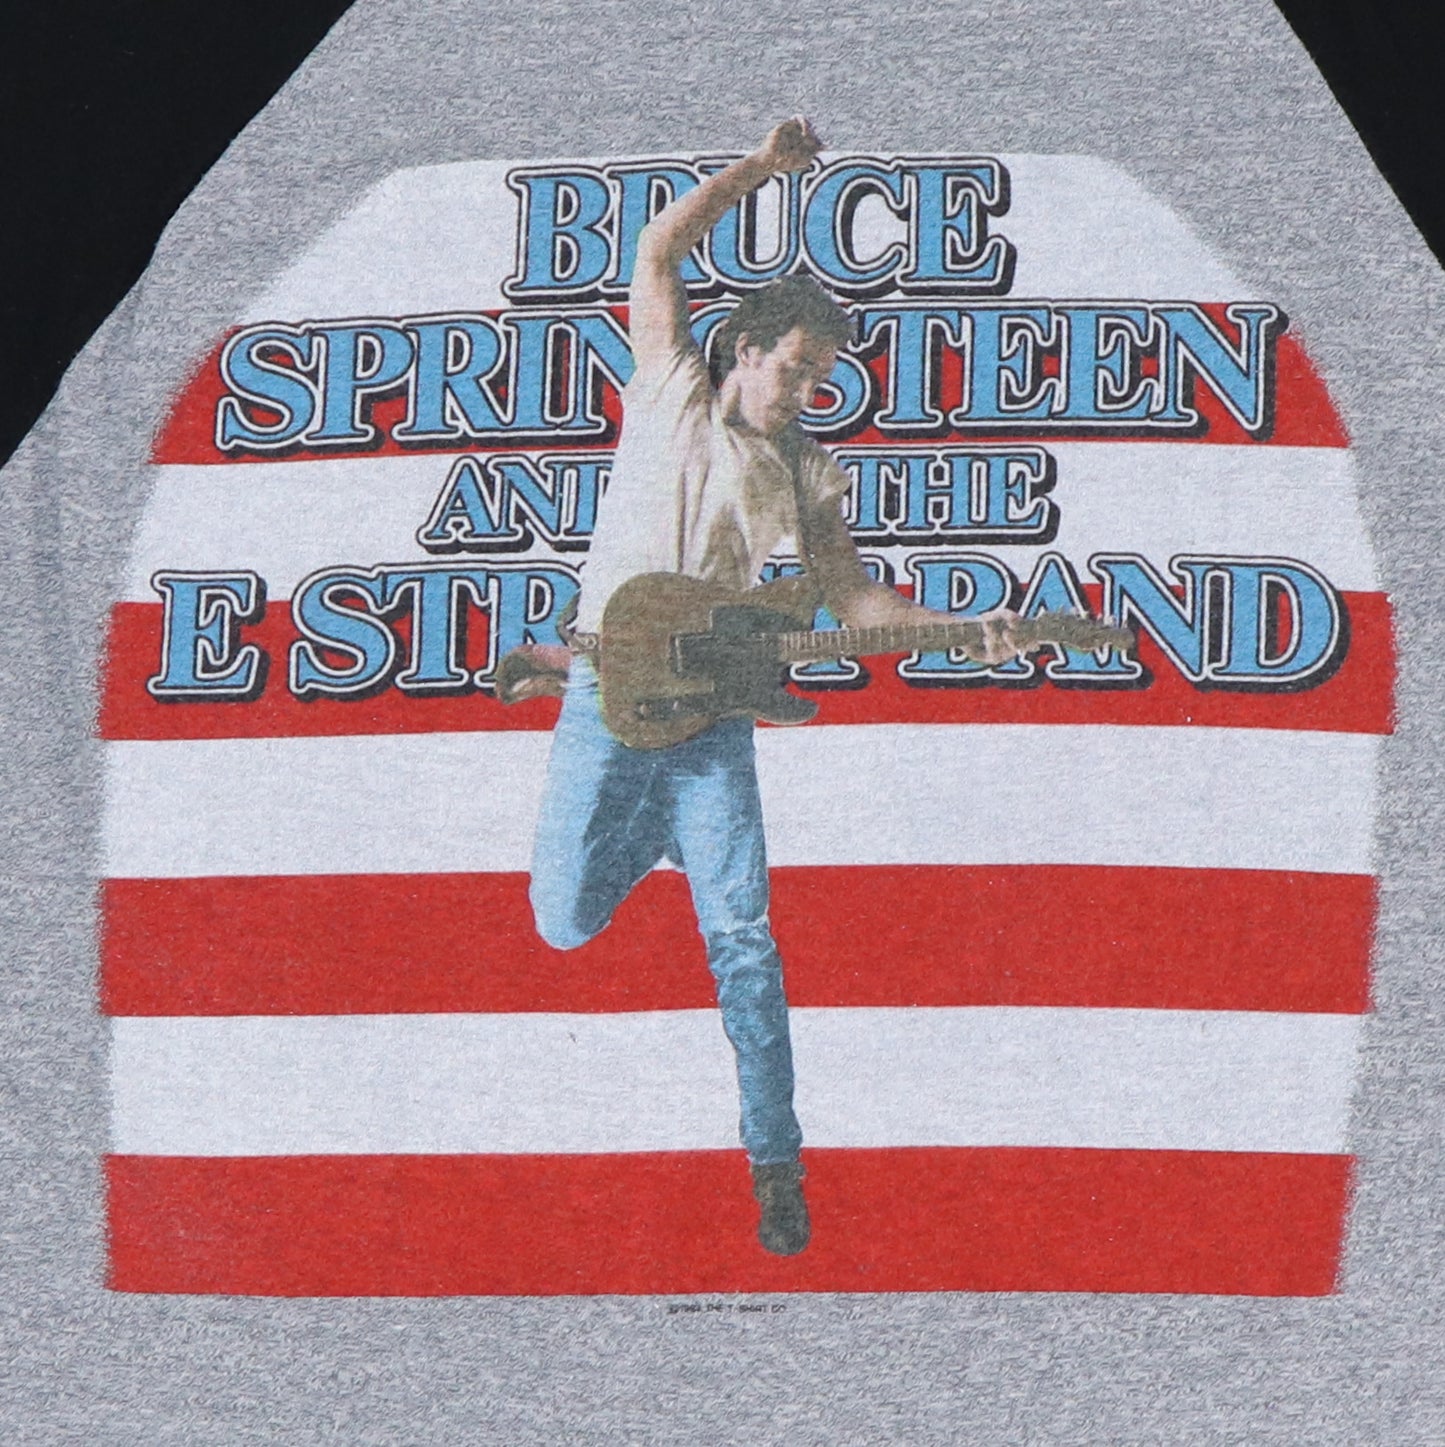 1984 Bruce Springsteen Tour Jersey Shirt